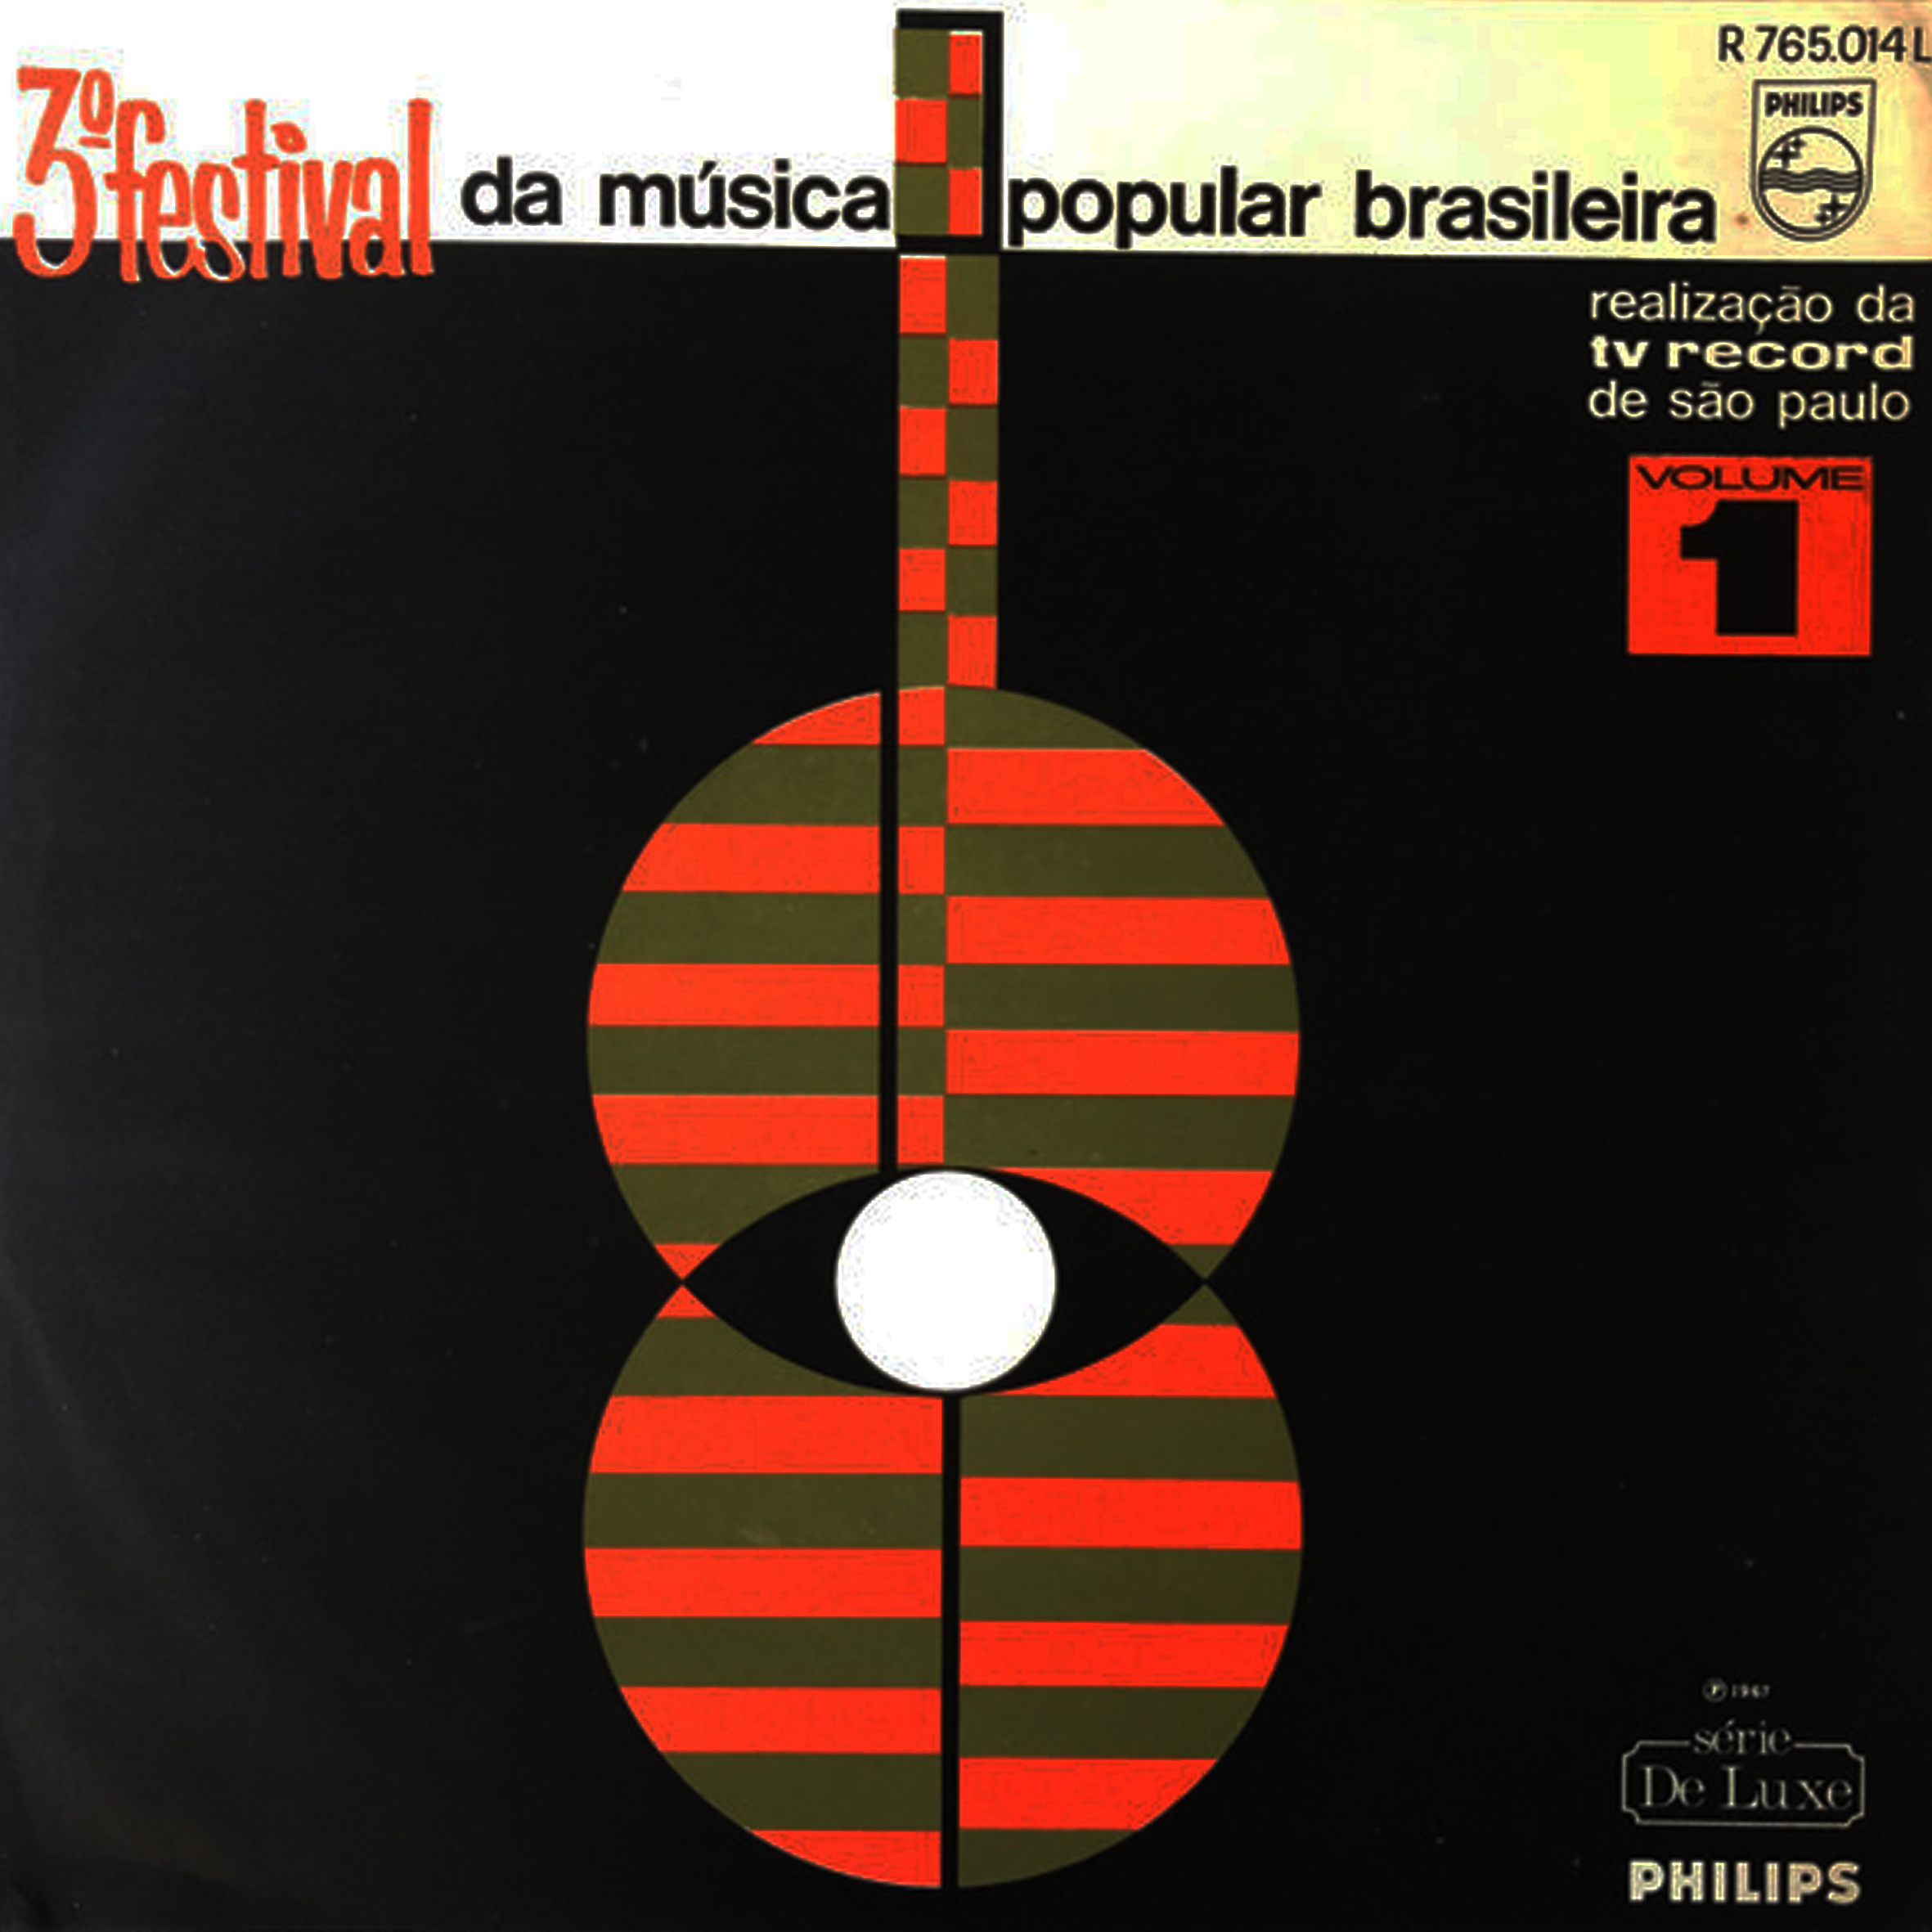 Vinil - 3 Festival Da Música Popular Brasileira - volume 1